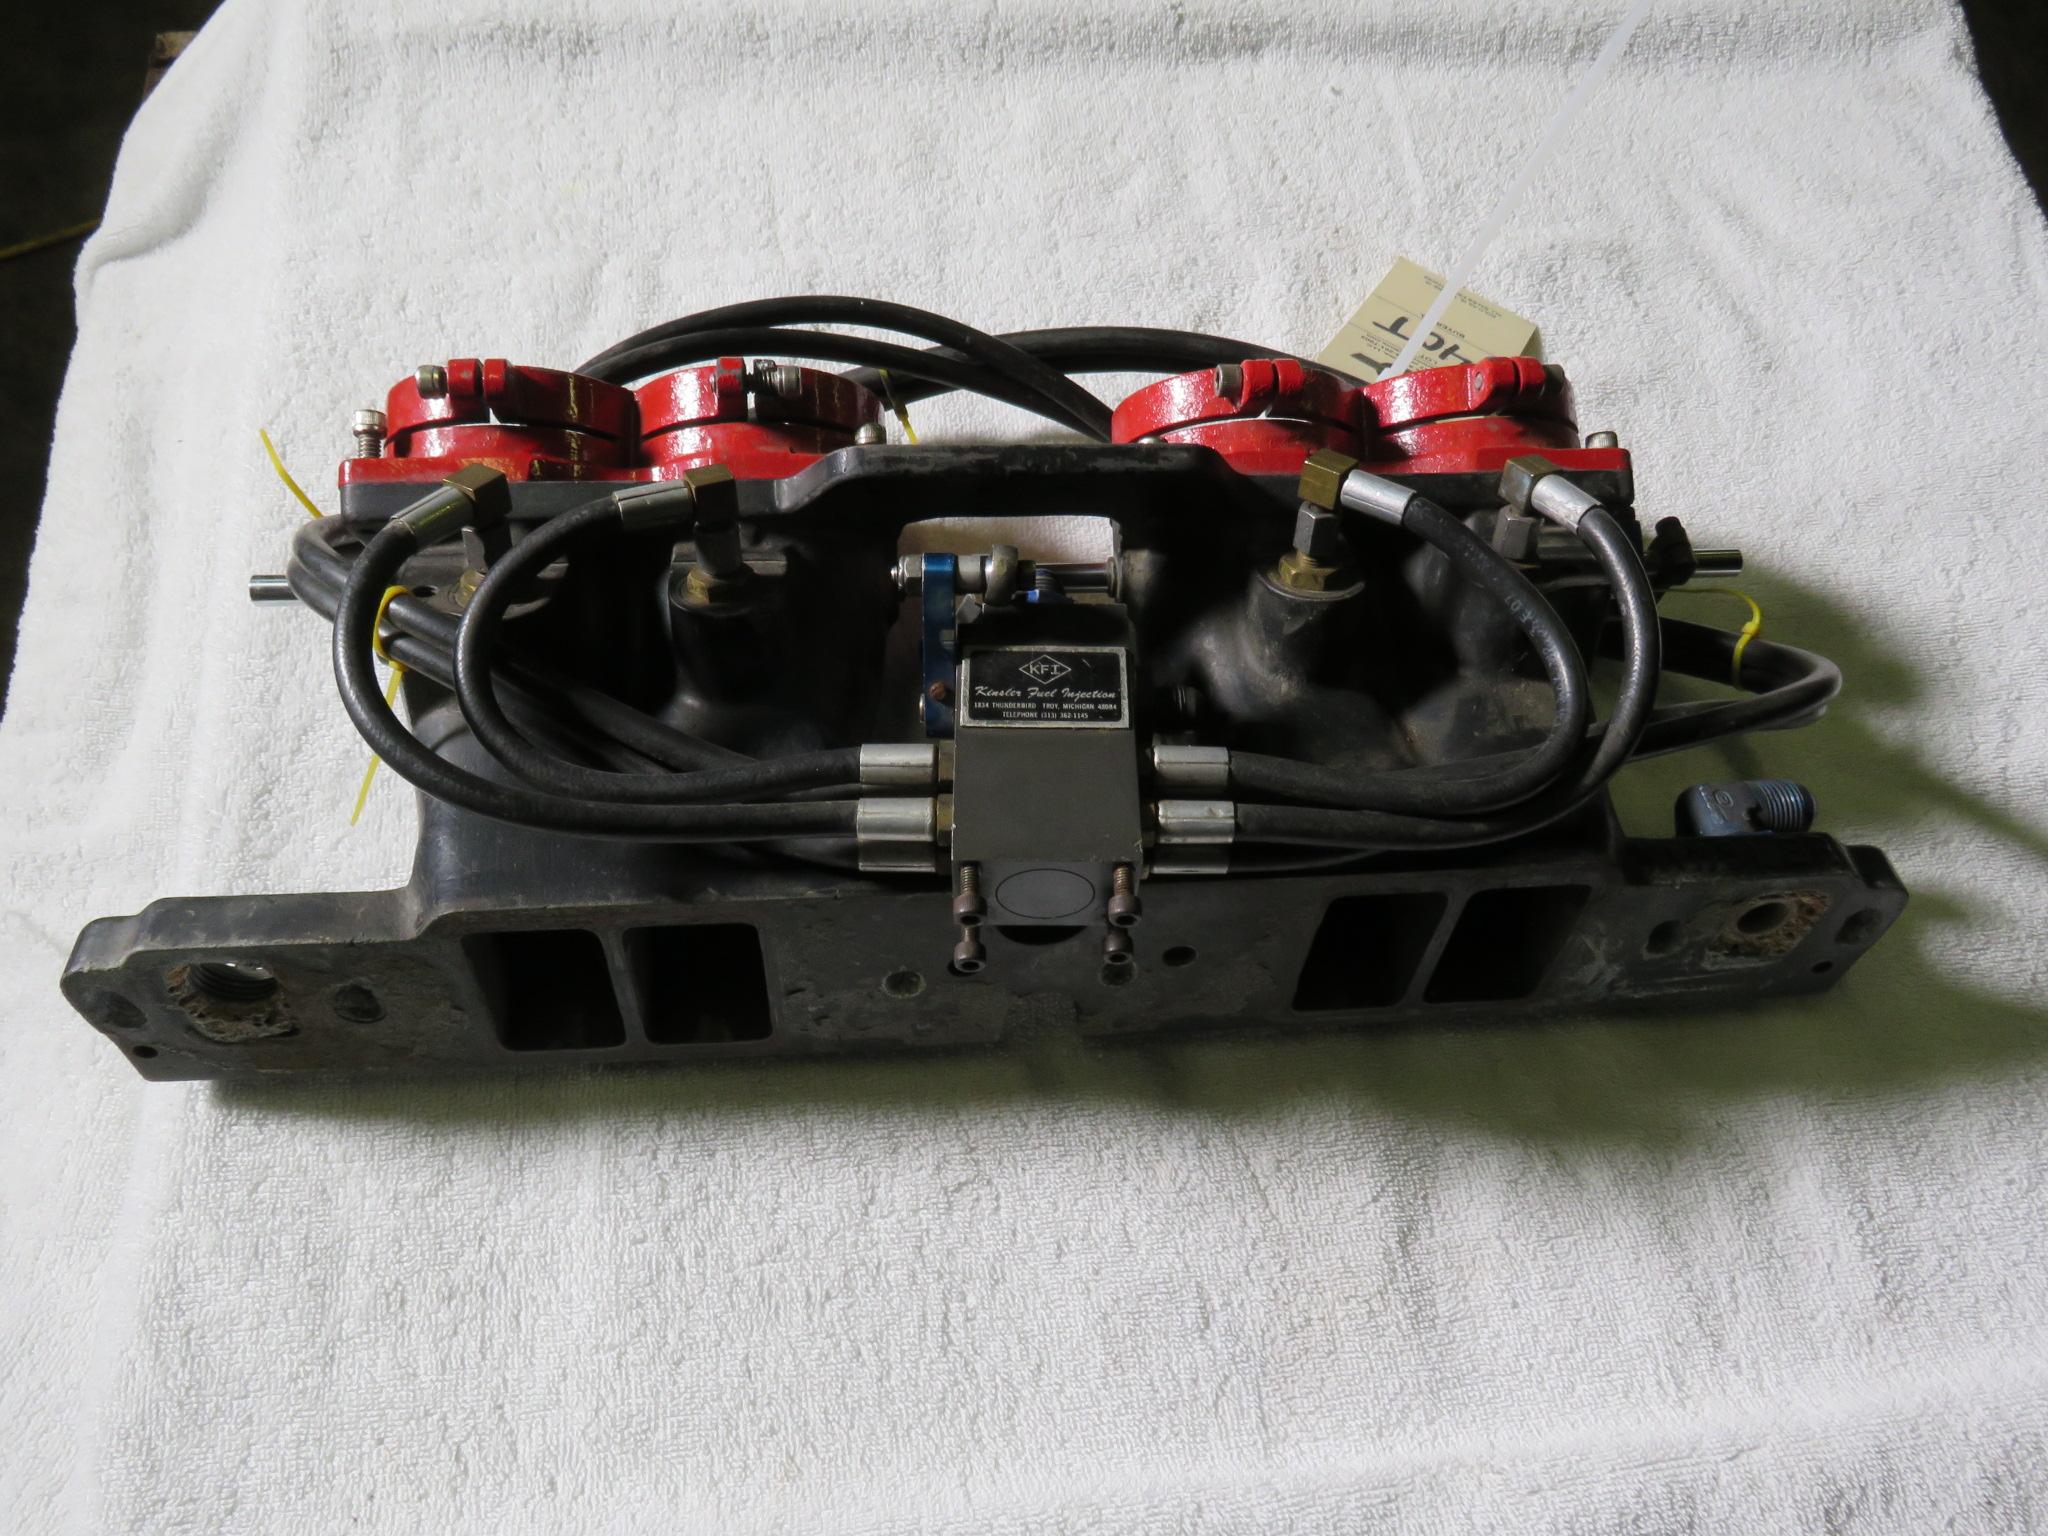 Kinsler Fuel Injected Mechanical 2 inch Manifold for Formula 1 or Vintage Midget